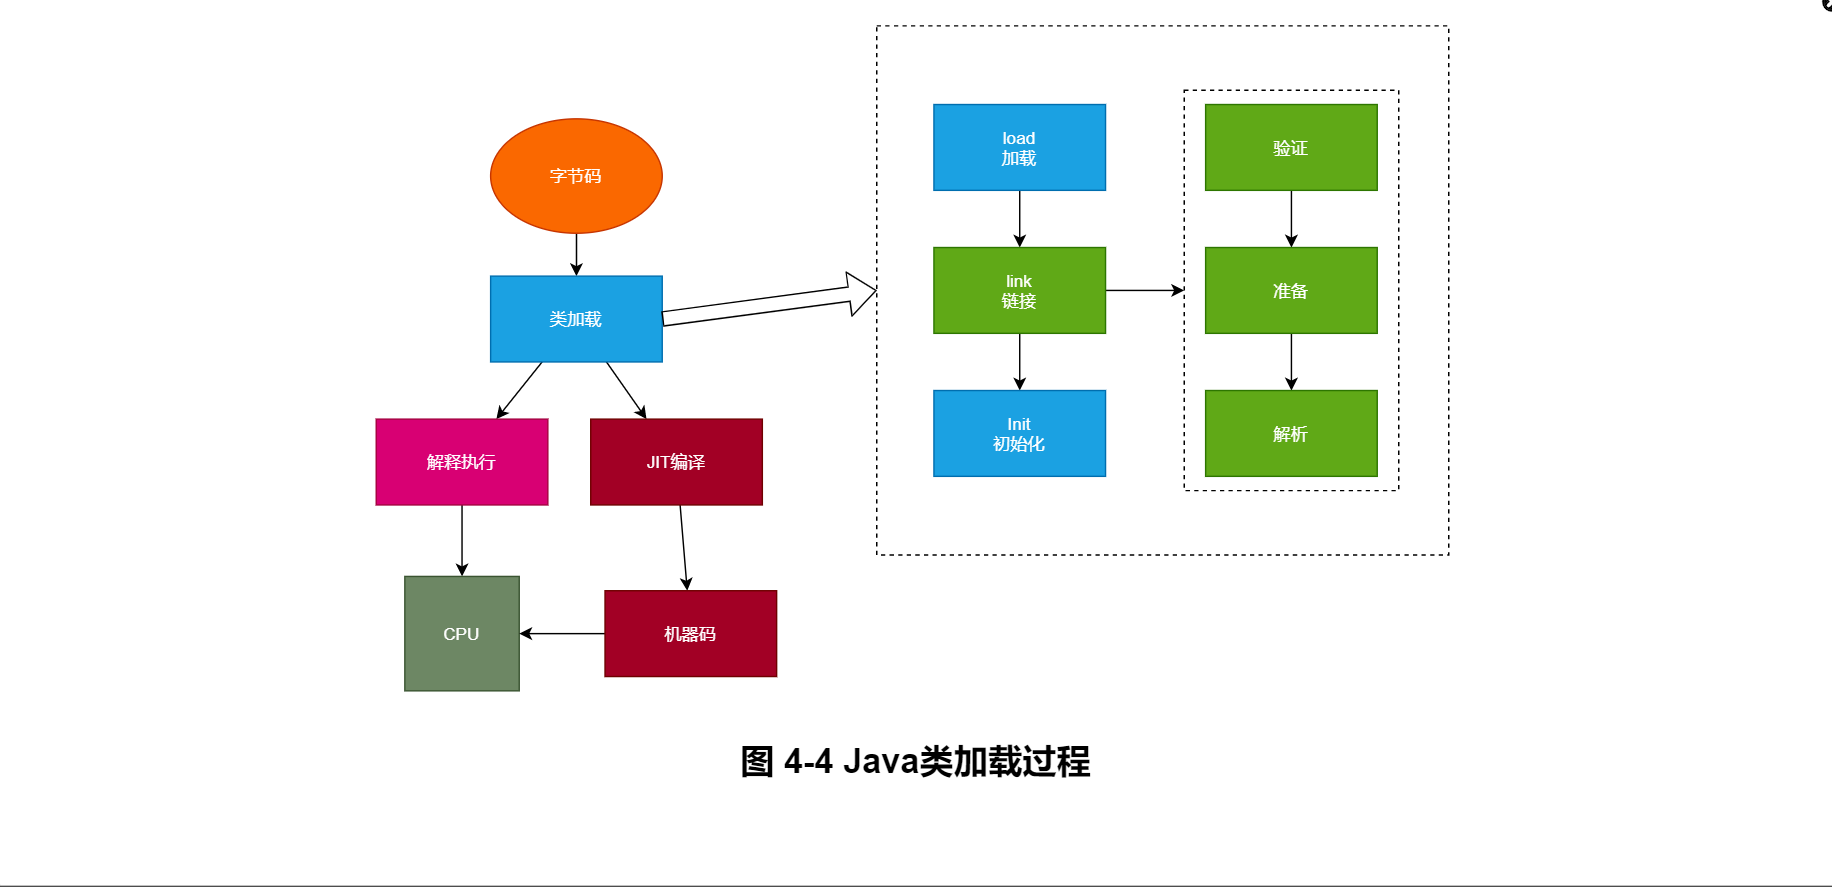 图 4-4 Java类加载过程